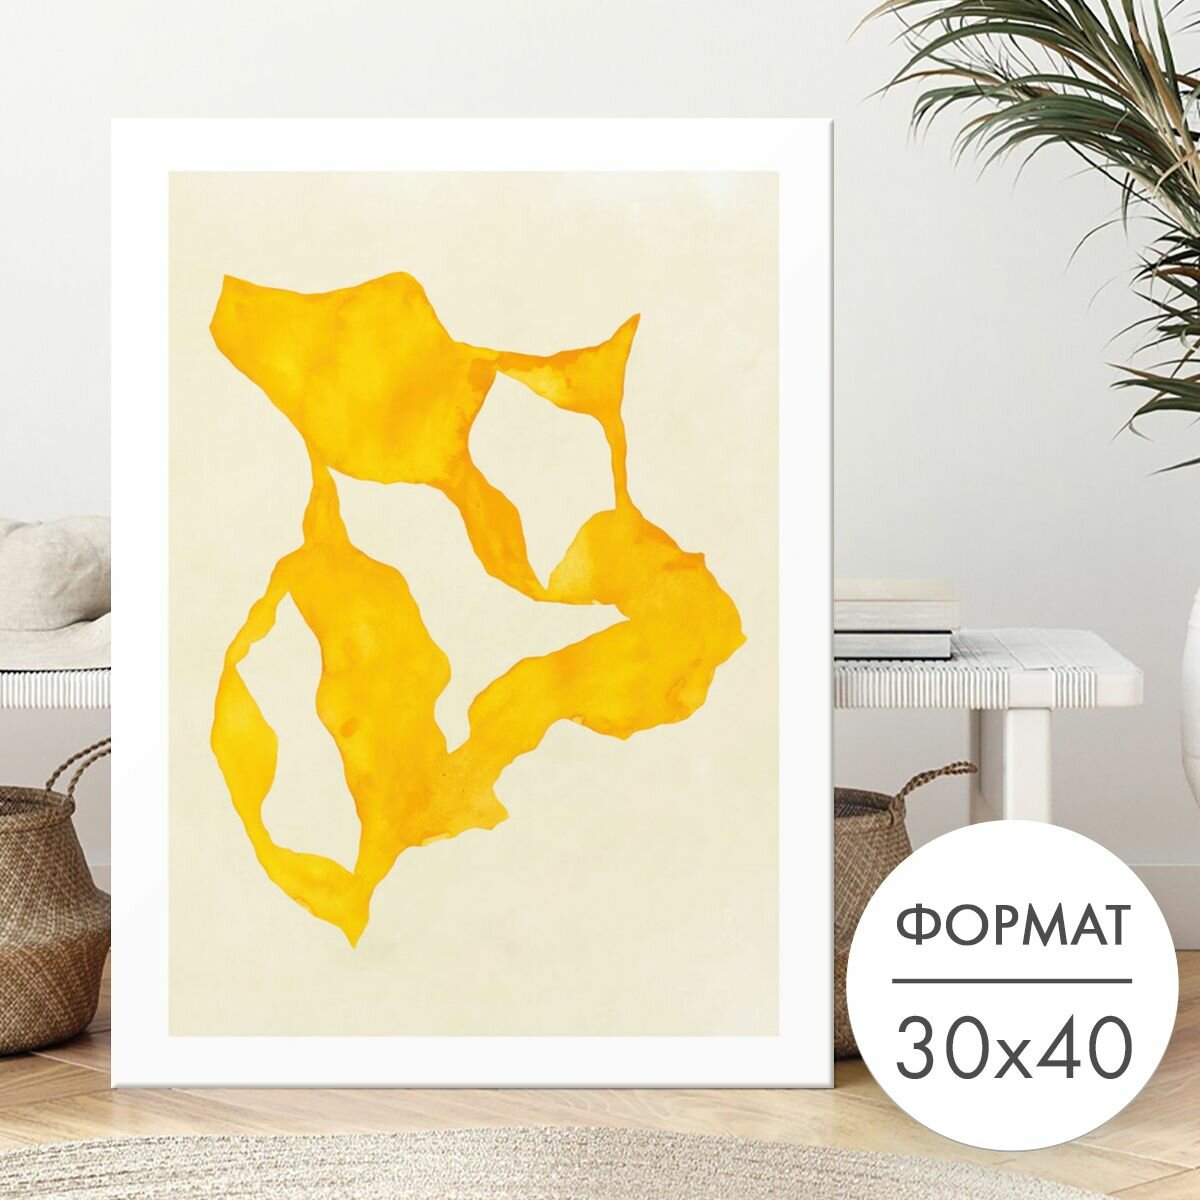 Постер "Абстрактные желтые формы" 30х40 на стену для интерьера